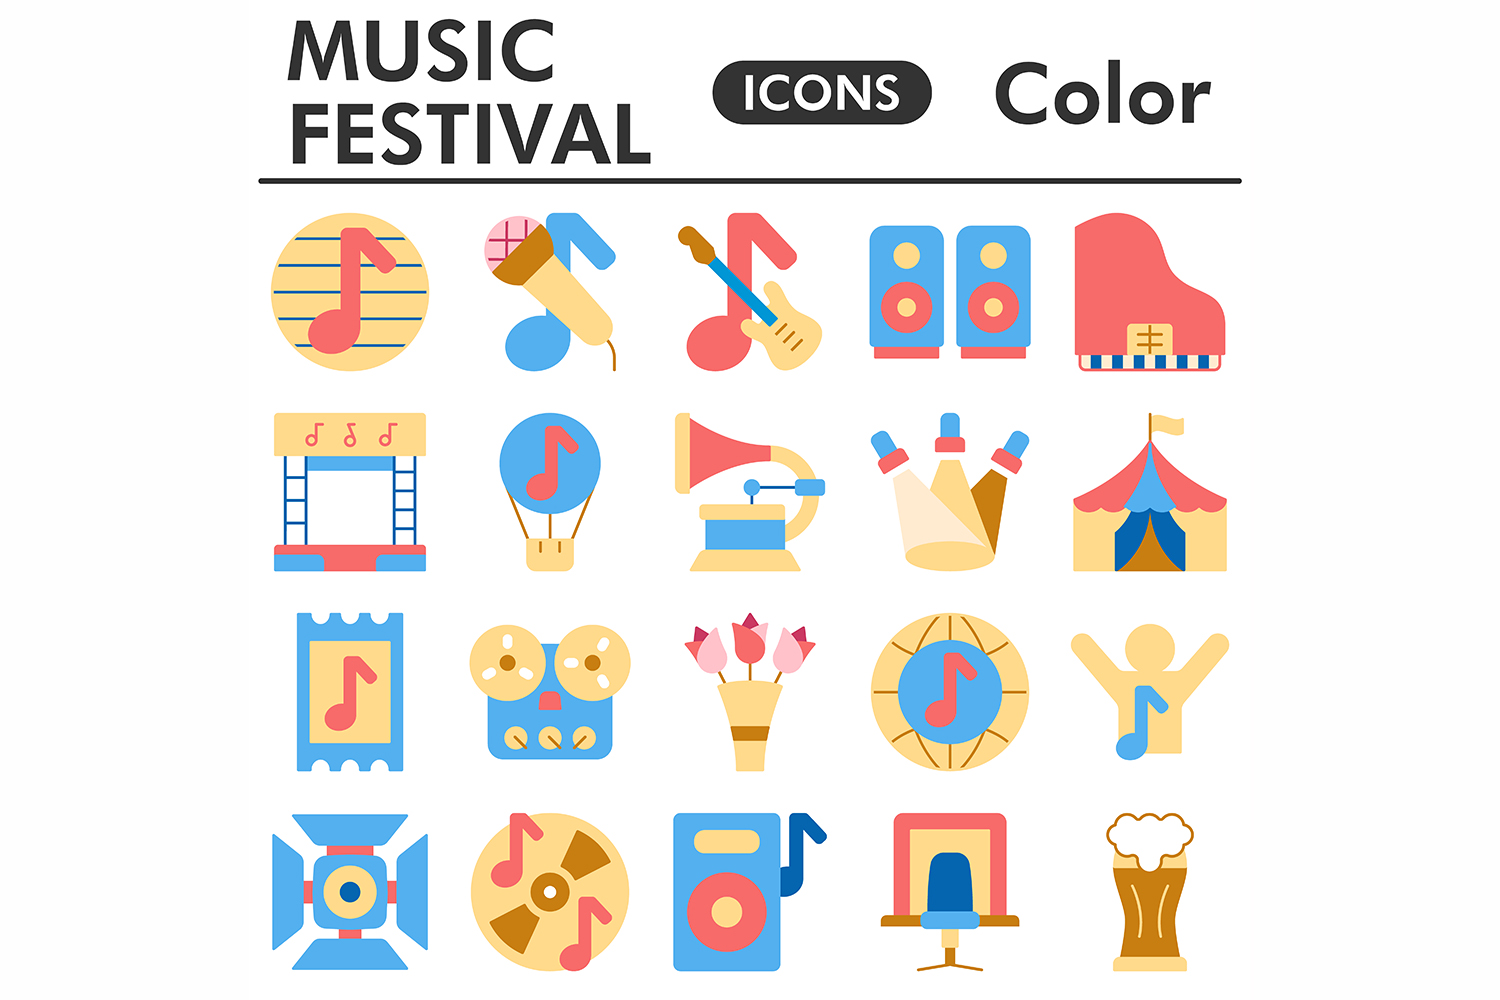 Muzic festival icons set, color style pinterest preview image.